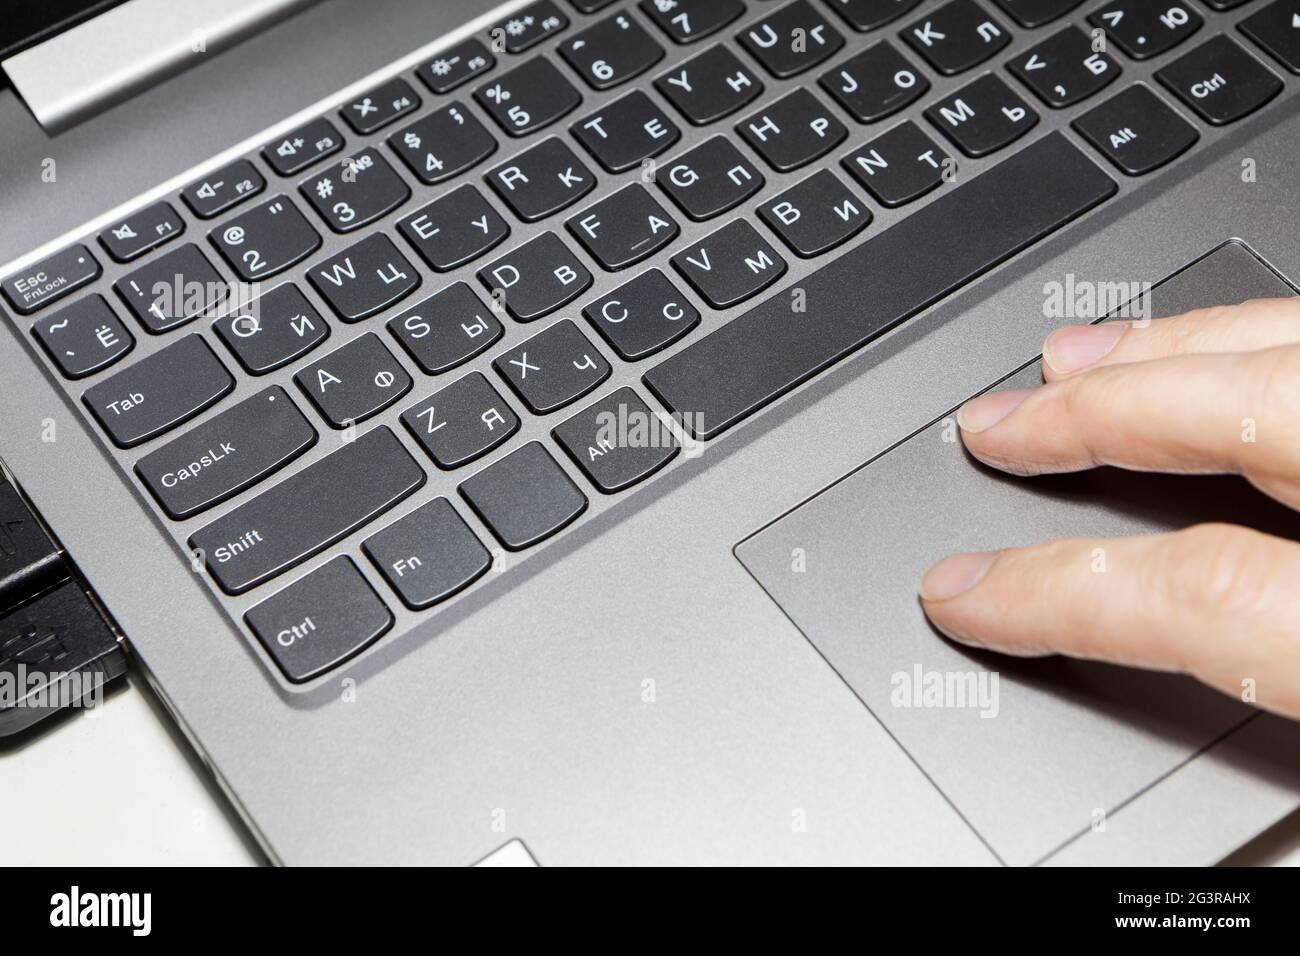 Clavier pour ordinateur portable argenté et pavé tactile avec doigts humains, vue rapprochée Banque D'Images